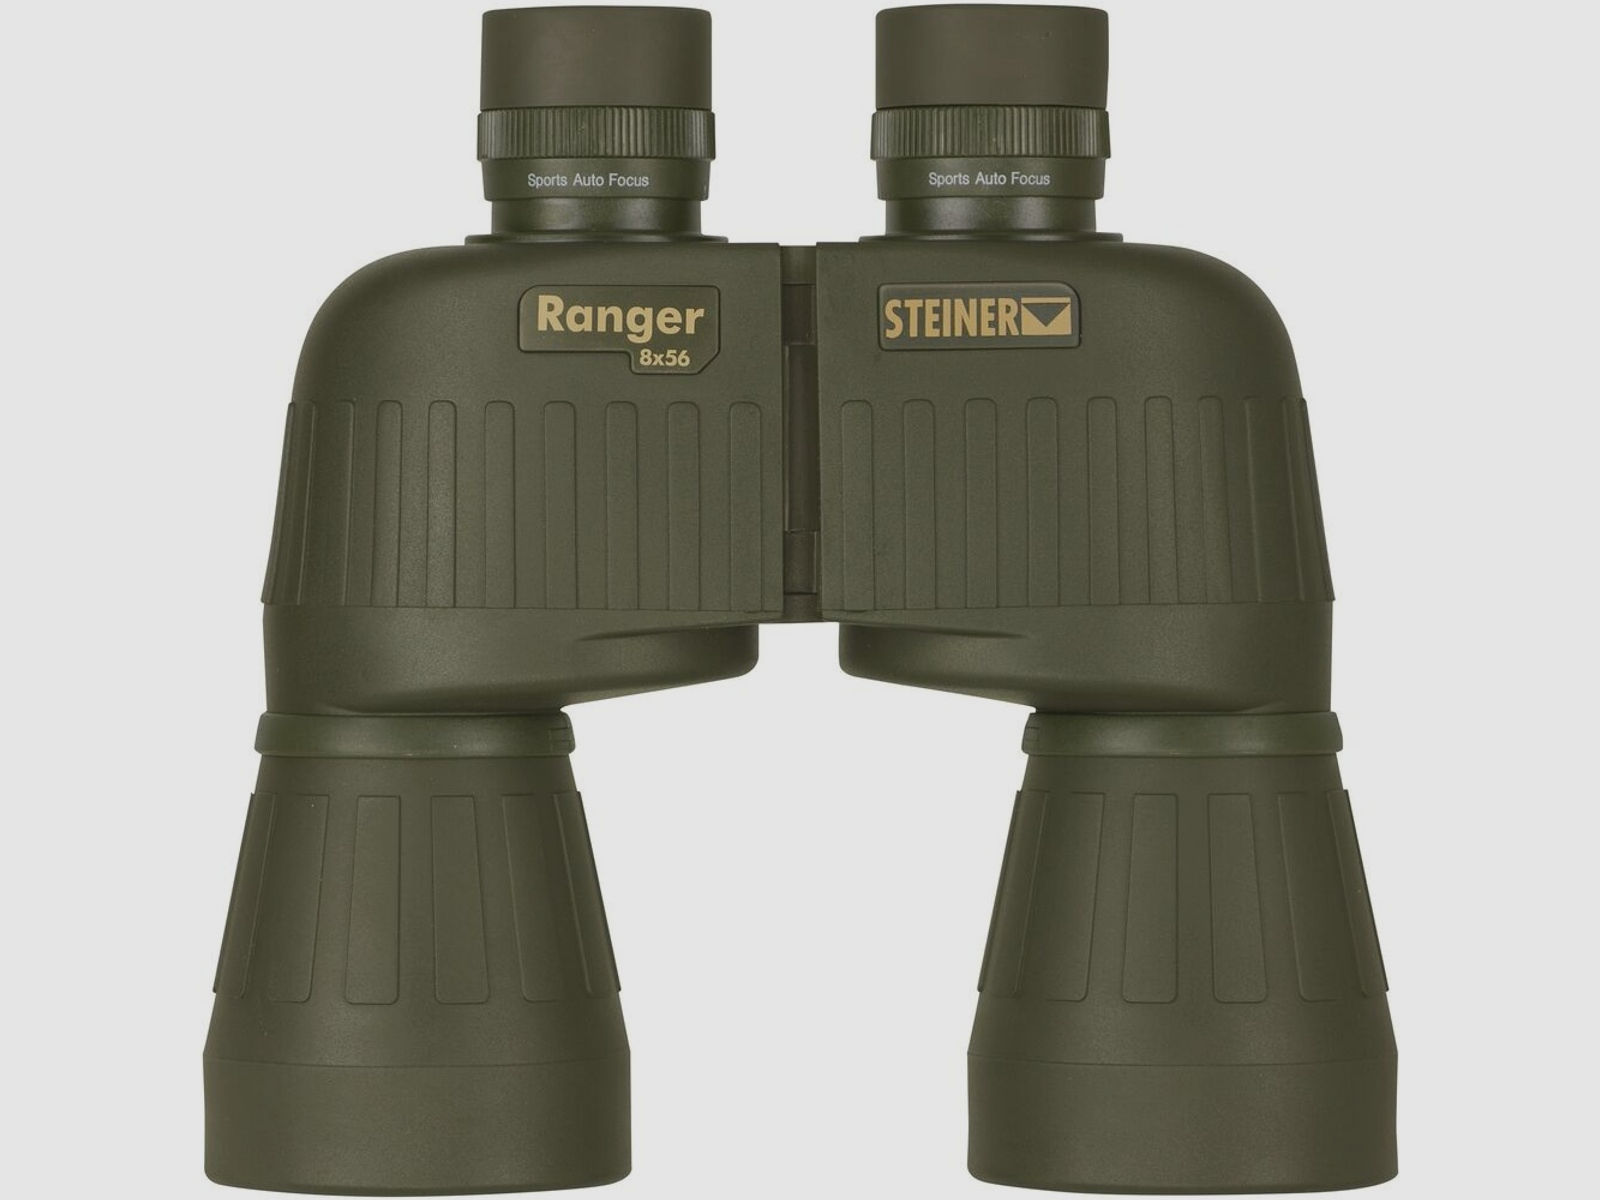 Steiner	 Fernglas Ranger 8x56